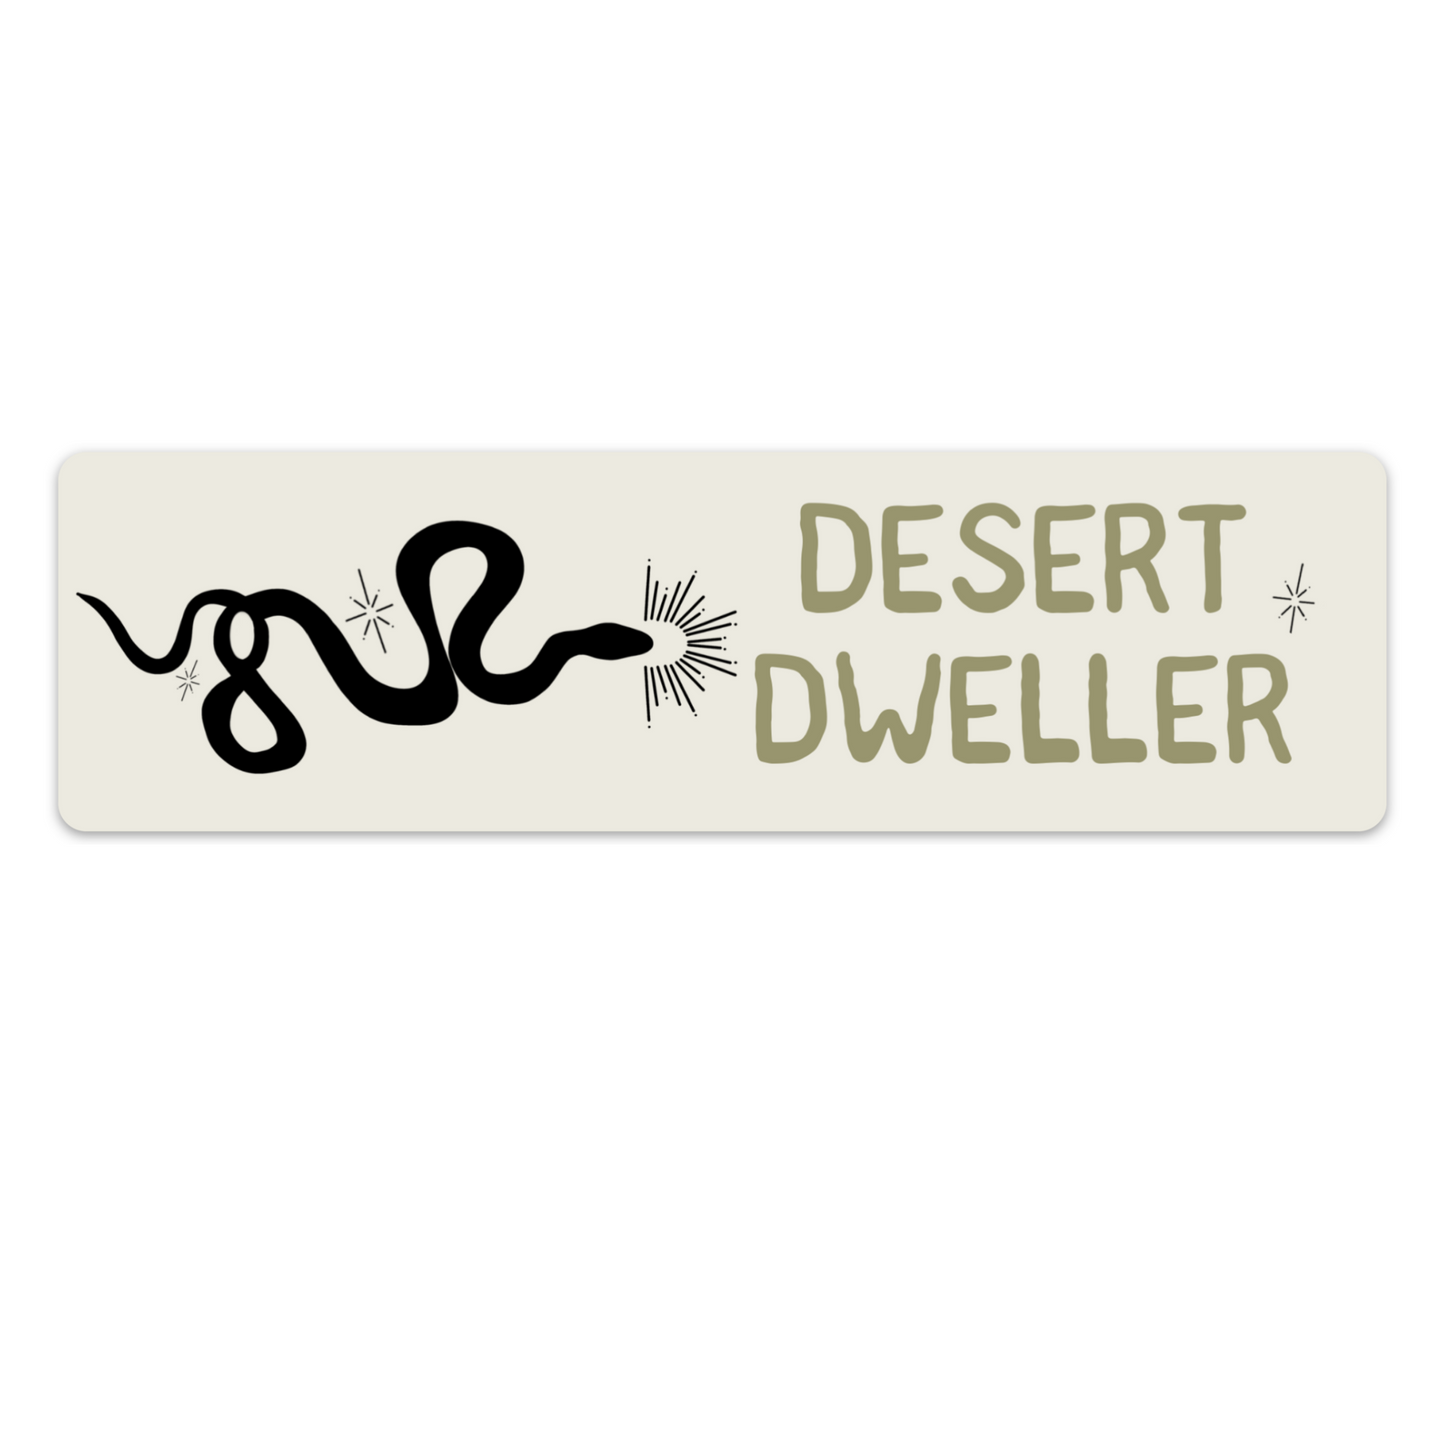 Desert Dweller Bumper Sticker